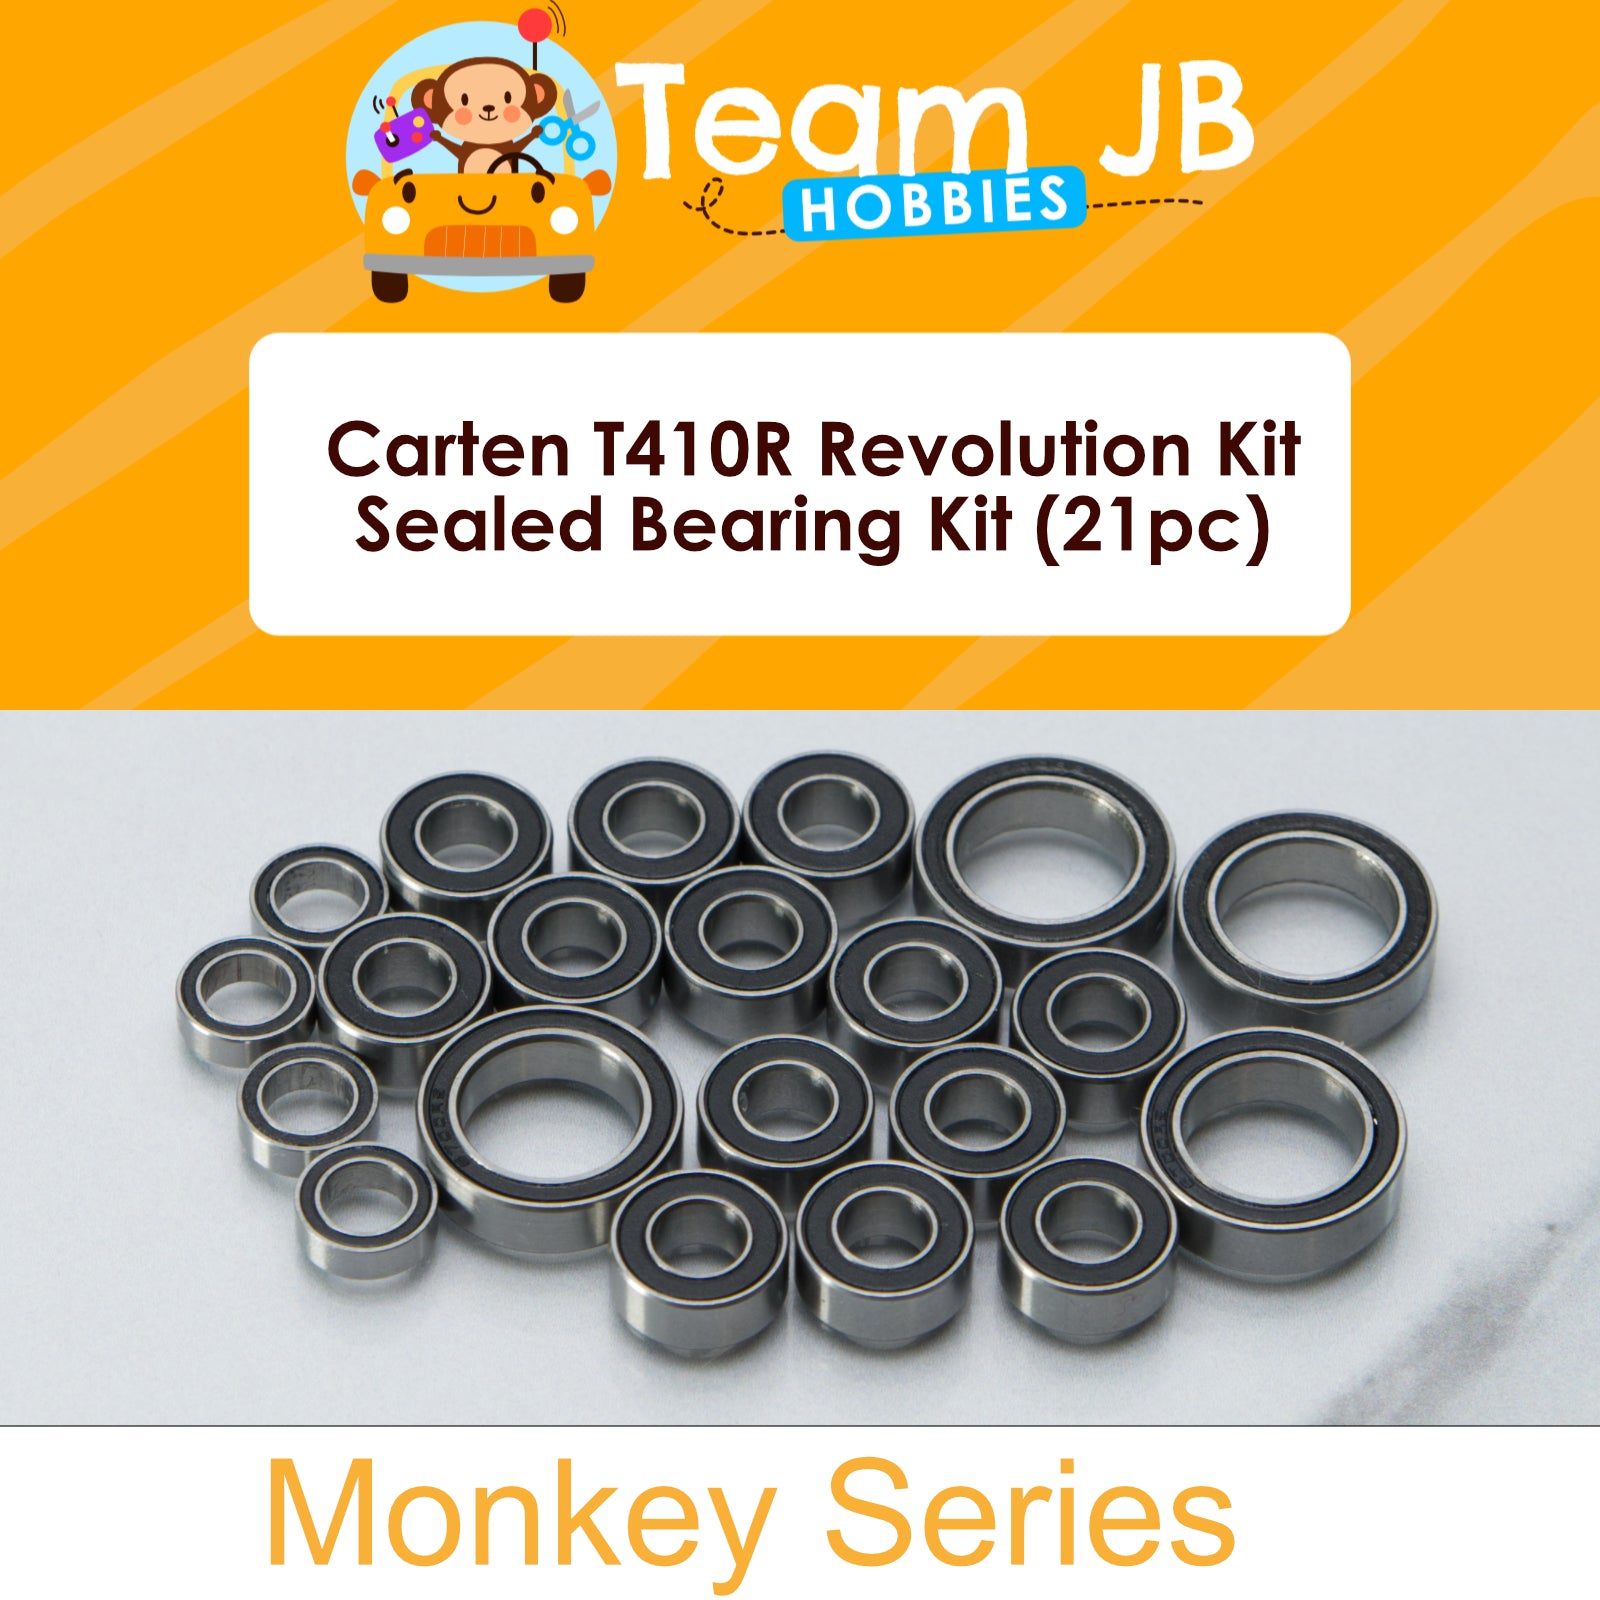 Carten T410R Revolution Kit - Sealed Bearing Kit